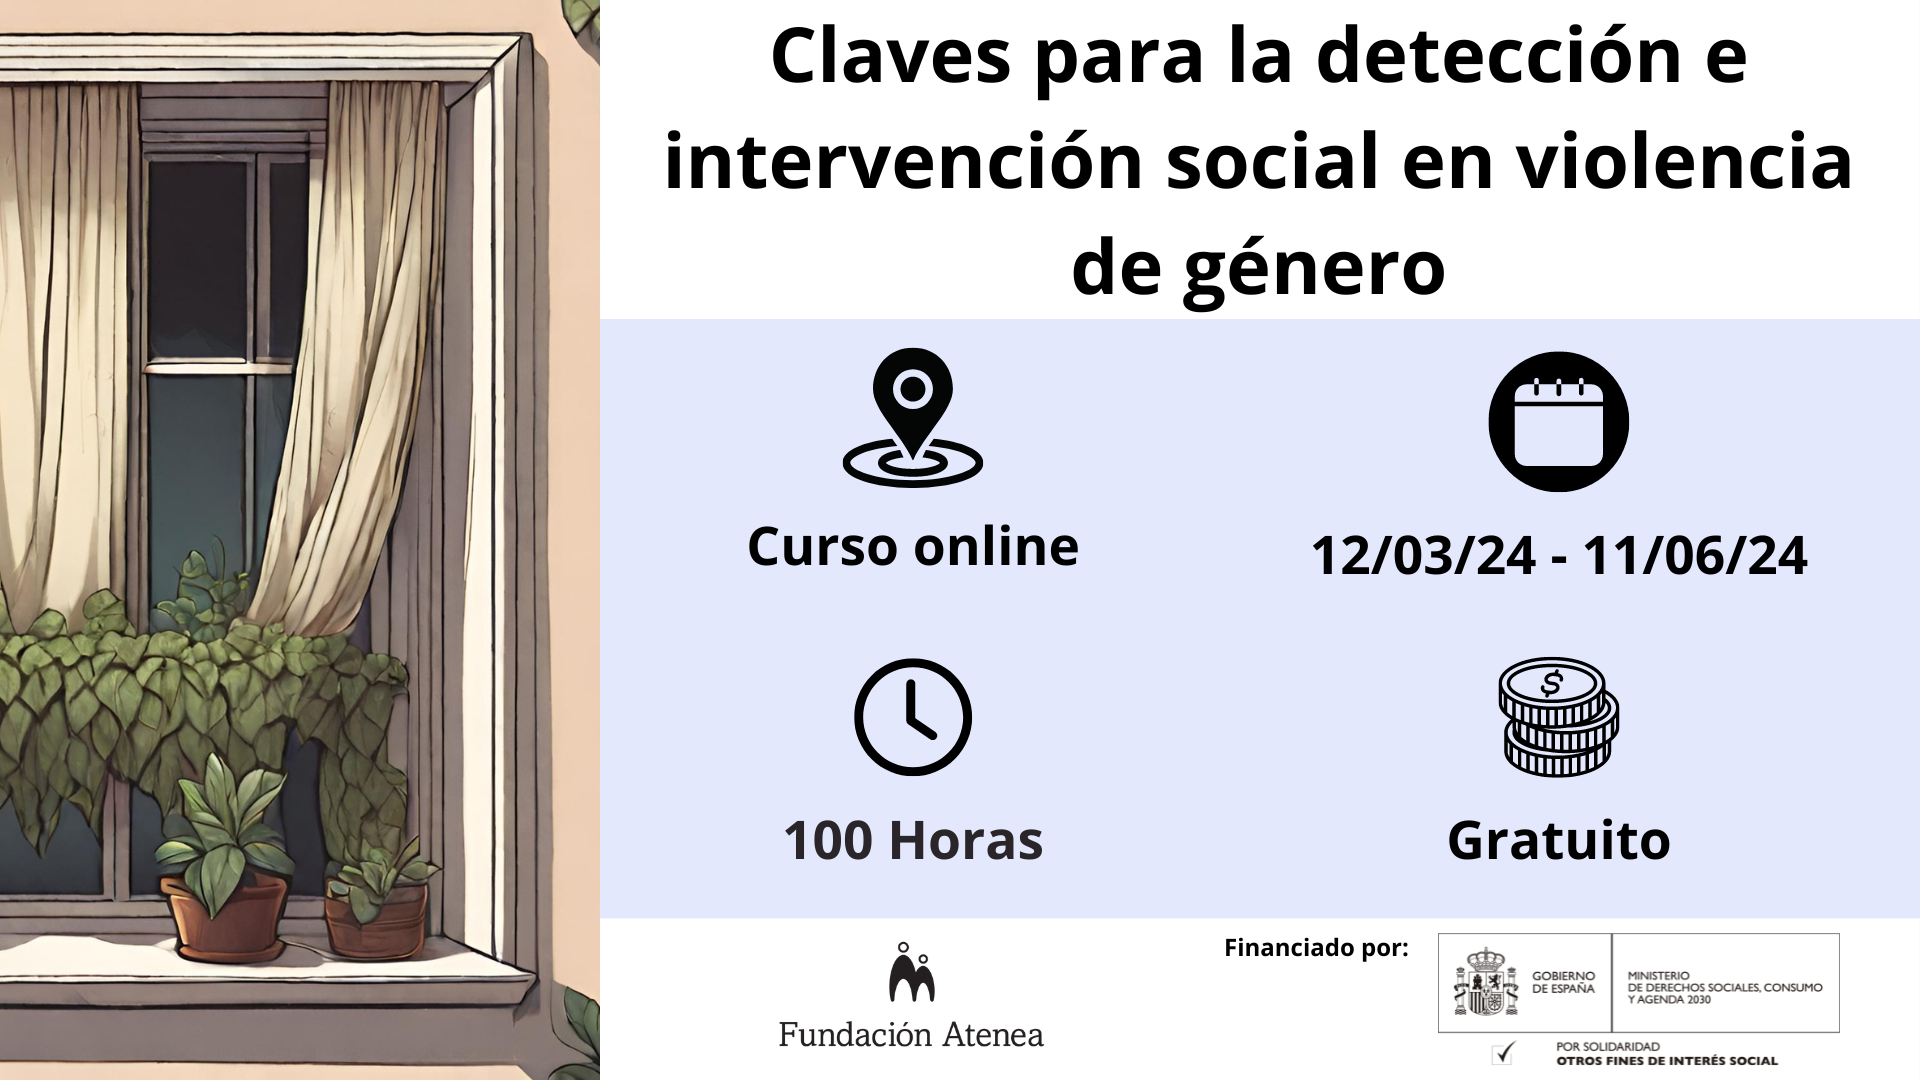 Claves para la detección e intervención en violencia de género. Curso Online gratuito realizado desde el 12/30/24 - 11/06/24 (100 horas)